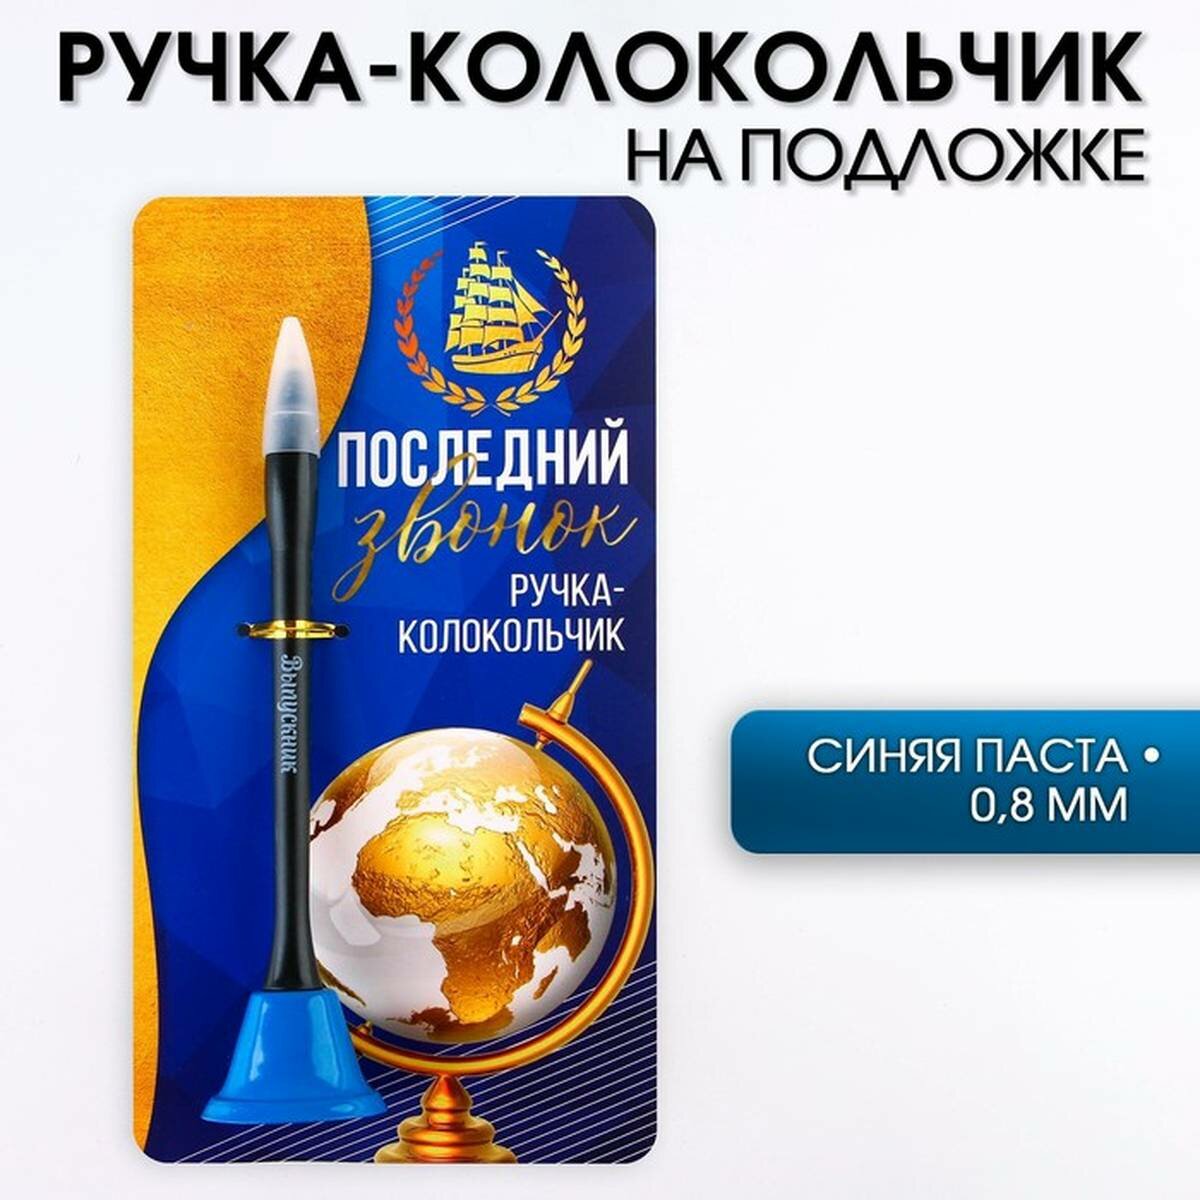 Ручка-колокольчик ArtFox - Последний звонок, шариковая, на открытке, синяя паста, 0.8 мм, 1 шт